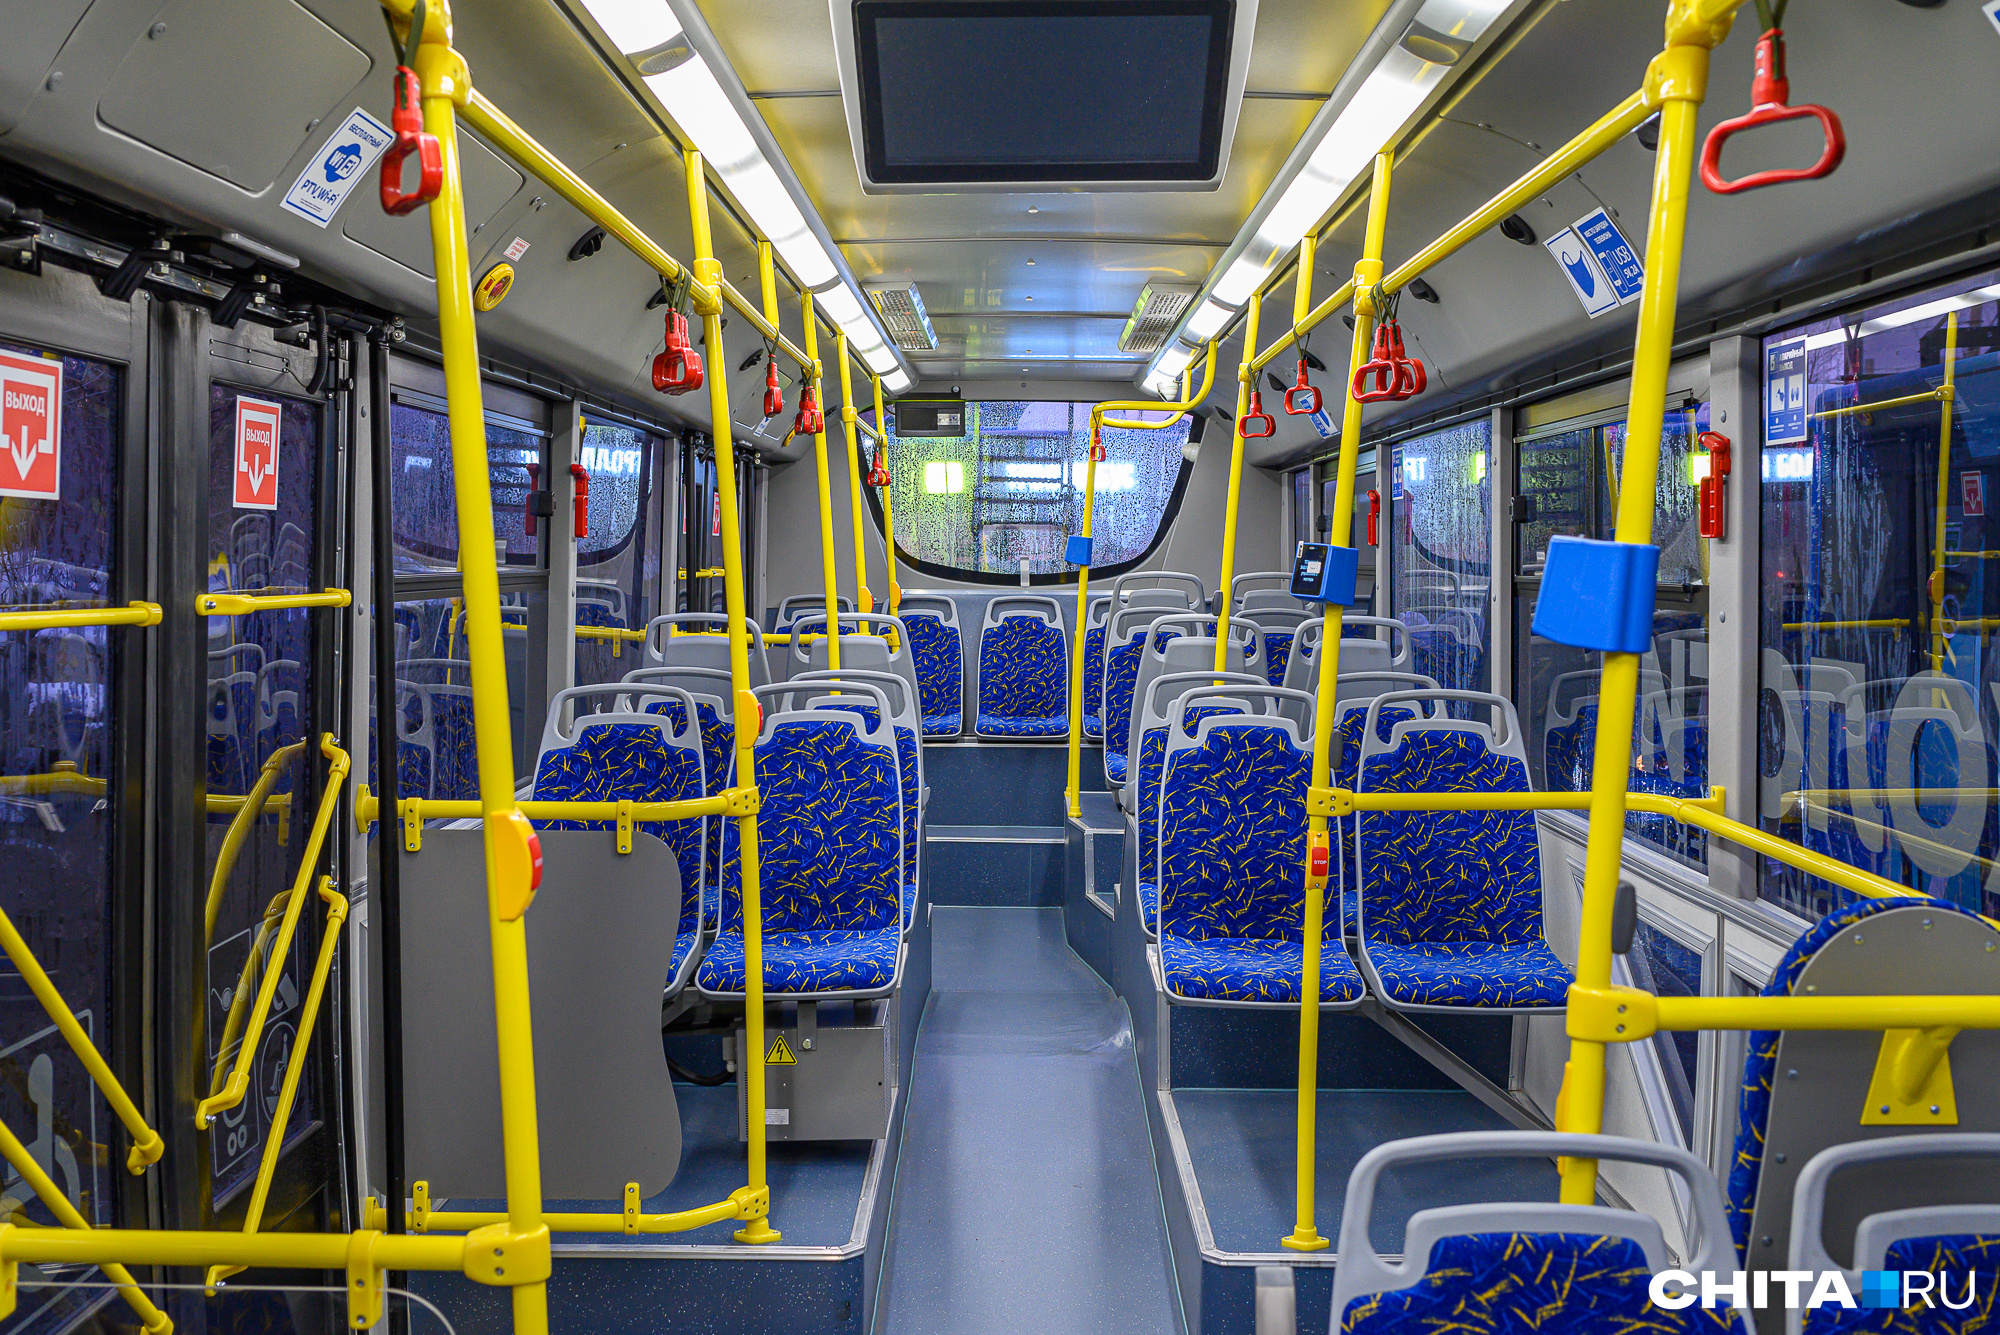 Троллейбусы стали реже ходить в Чите из-за отсутствия водителей